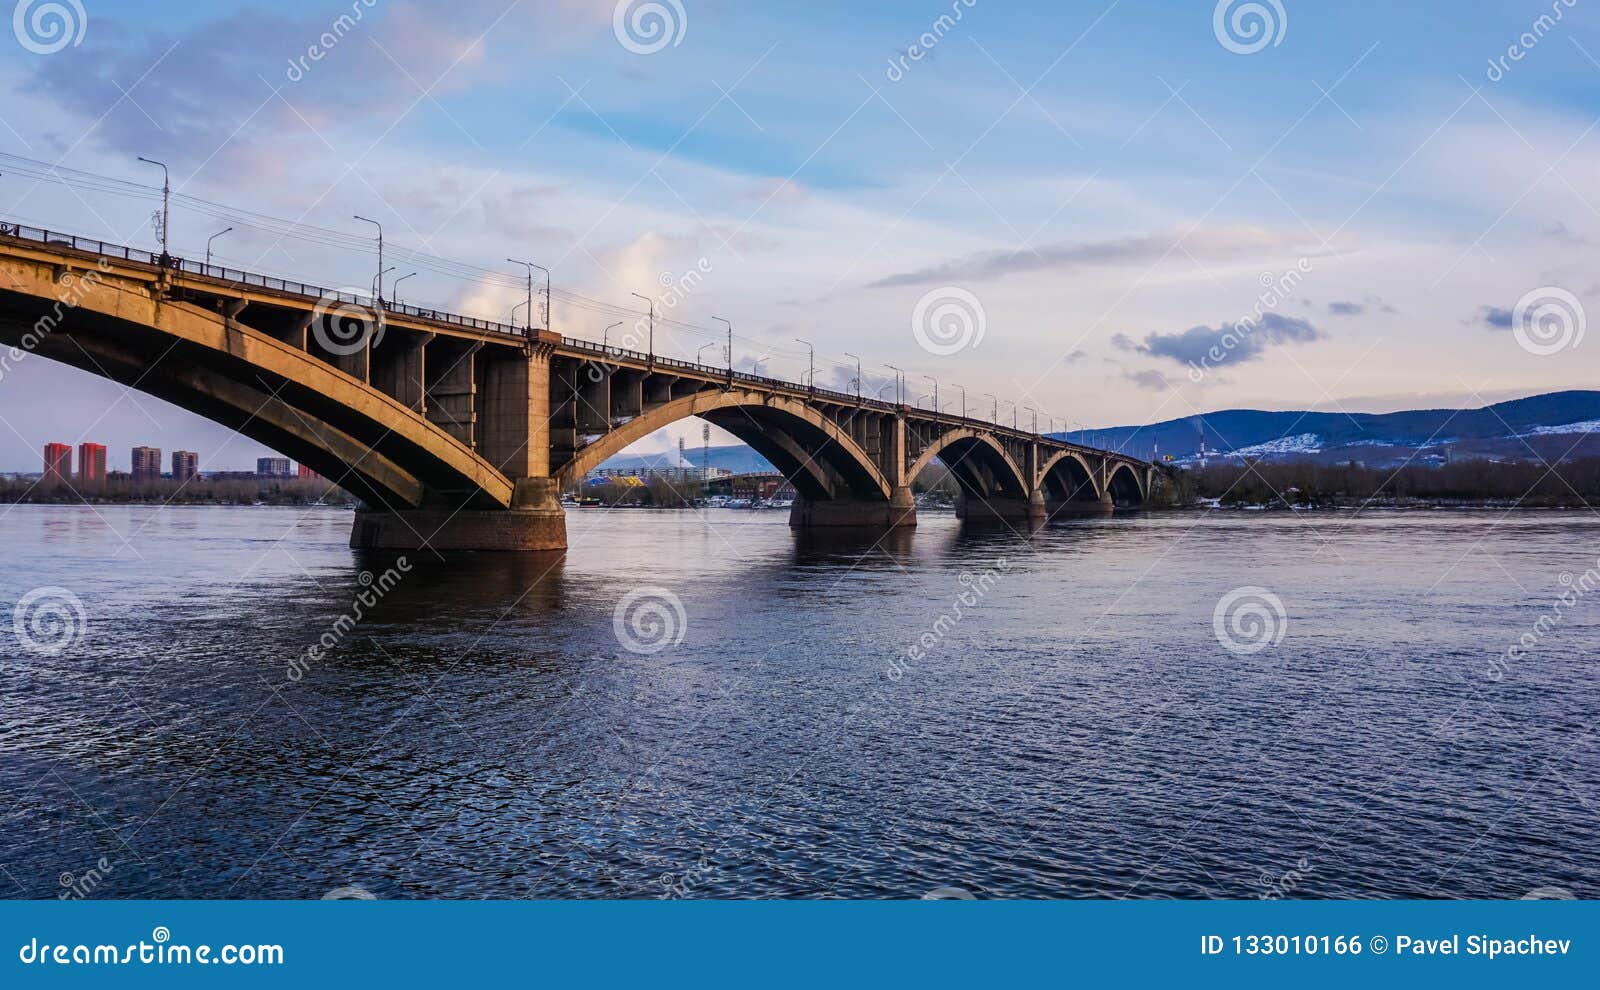 Communal Bridge in Krasnoyarsk, Stock Photo - Image of enisey, bridge: 133010166